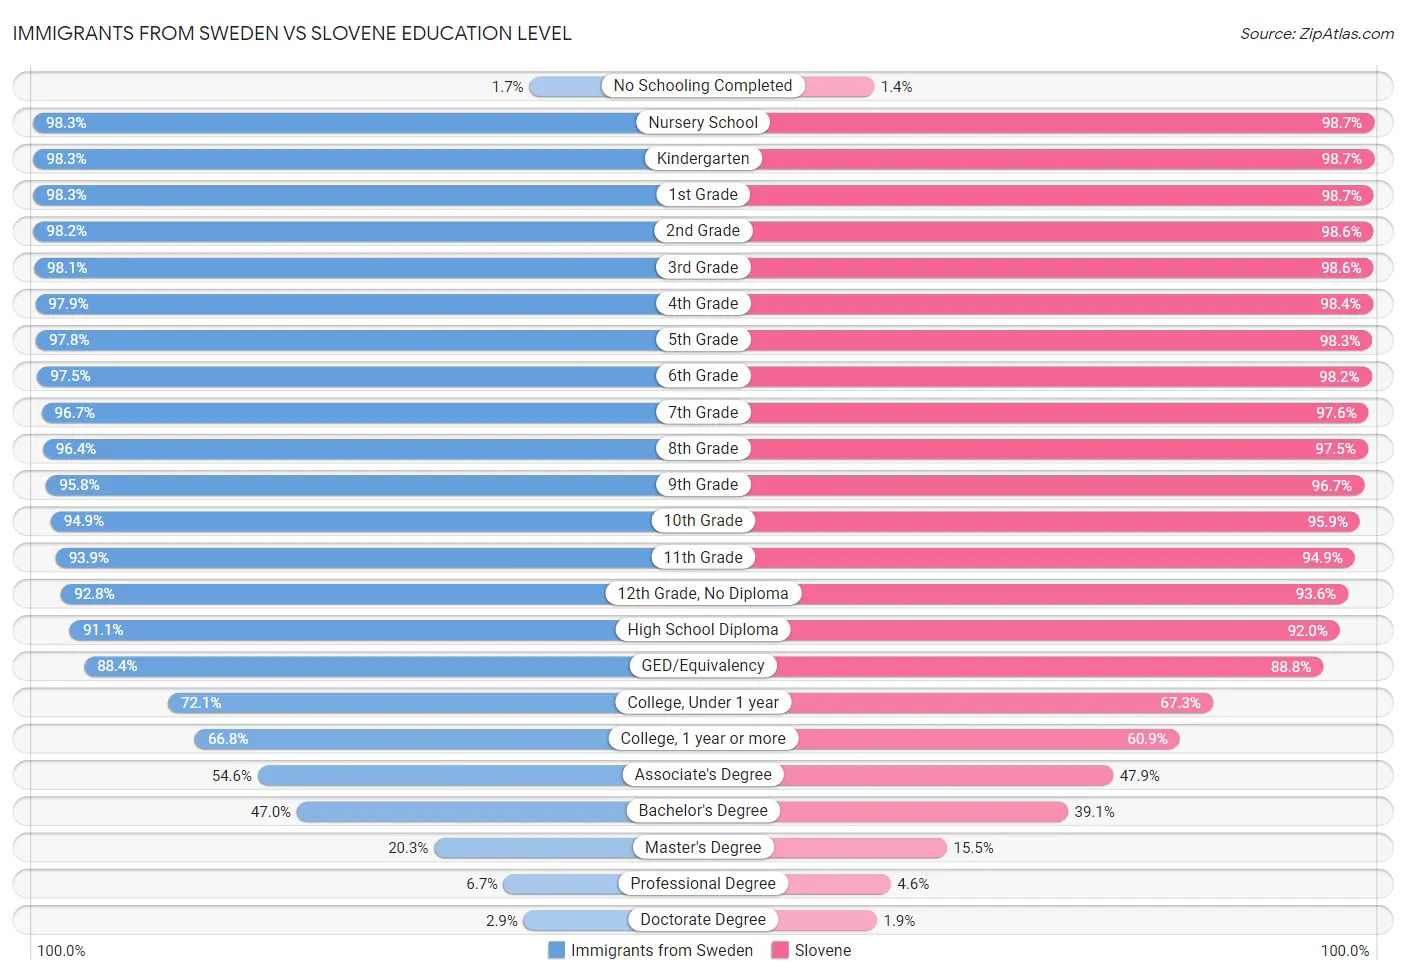 Immigrants from Sweden vs Slovene Education Level